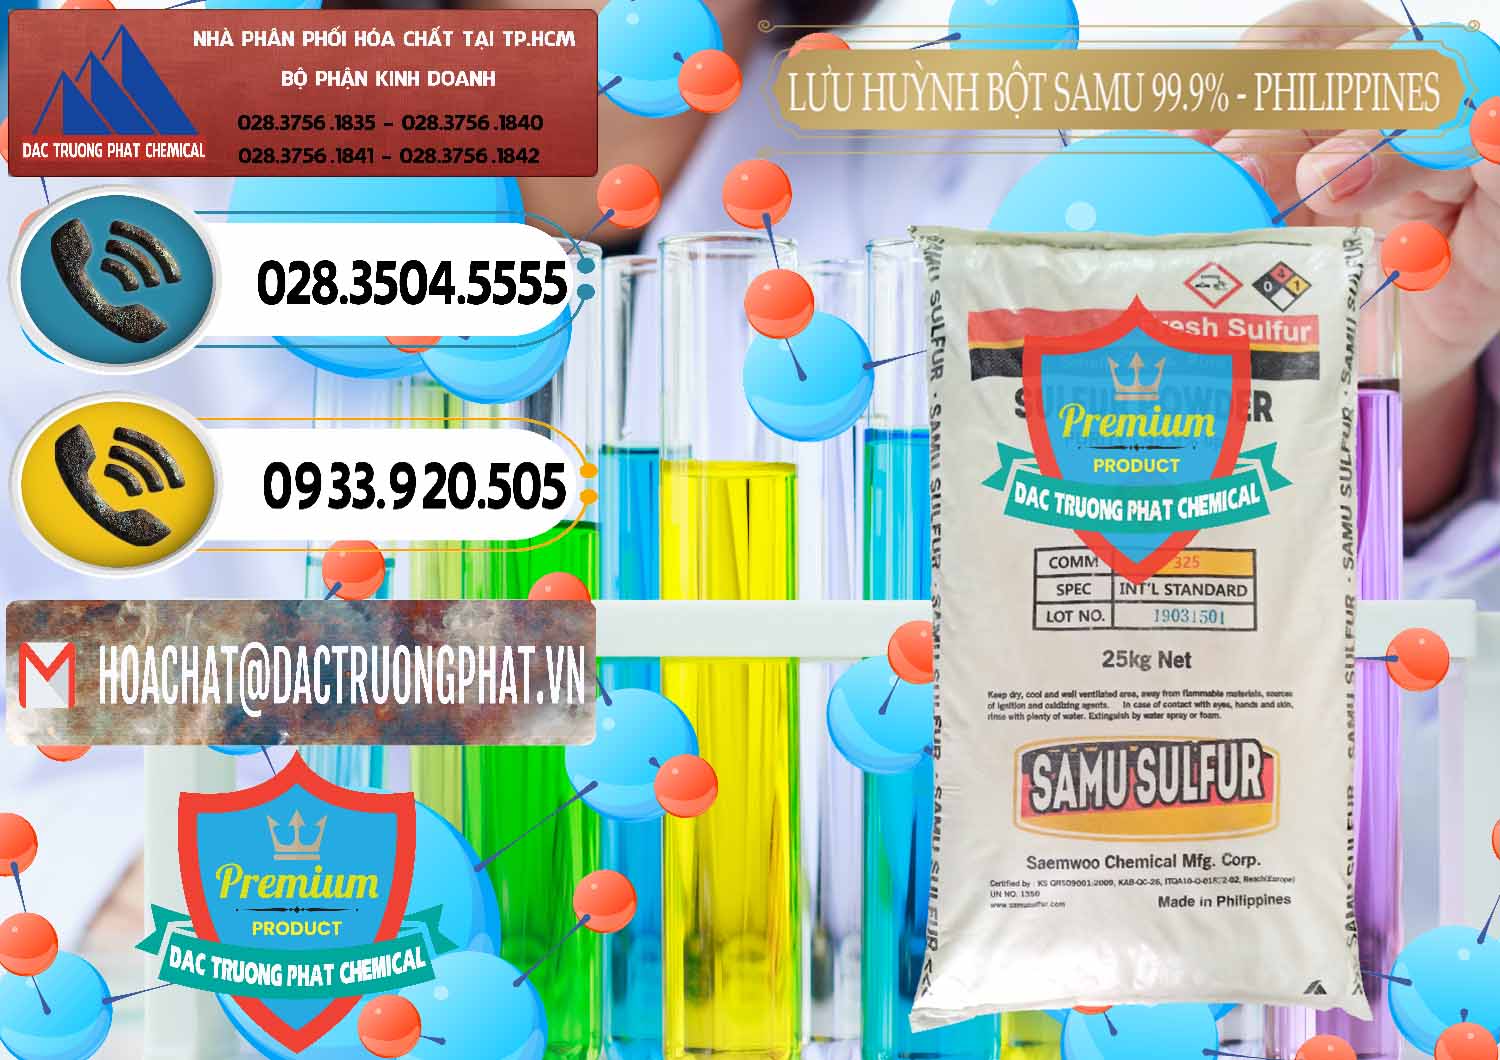 Cty chuyên bán ( cung cấp ) Lưu huỳnh Bột - Sulfur Powder Samu Philippines - 0201 - Công ty bán và phân phối hóa chất tại TP.HCM - hoachatdetnhuom.vn